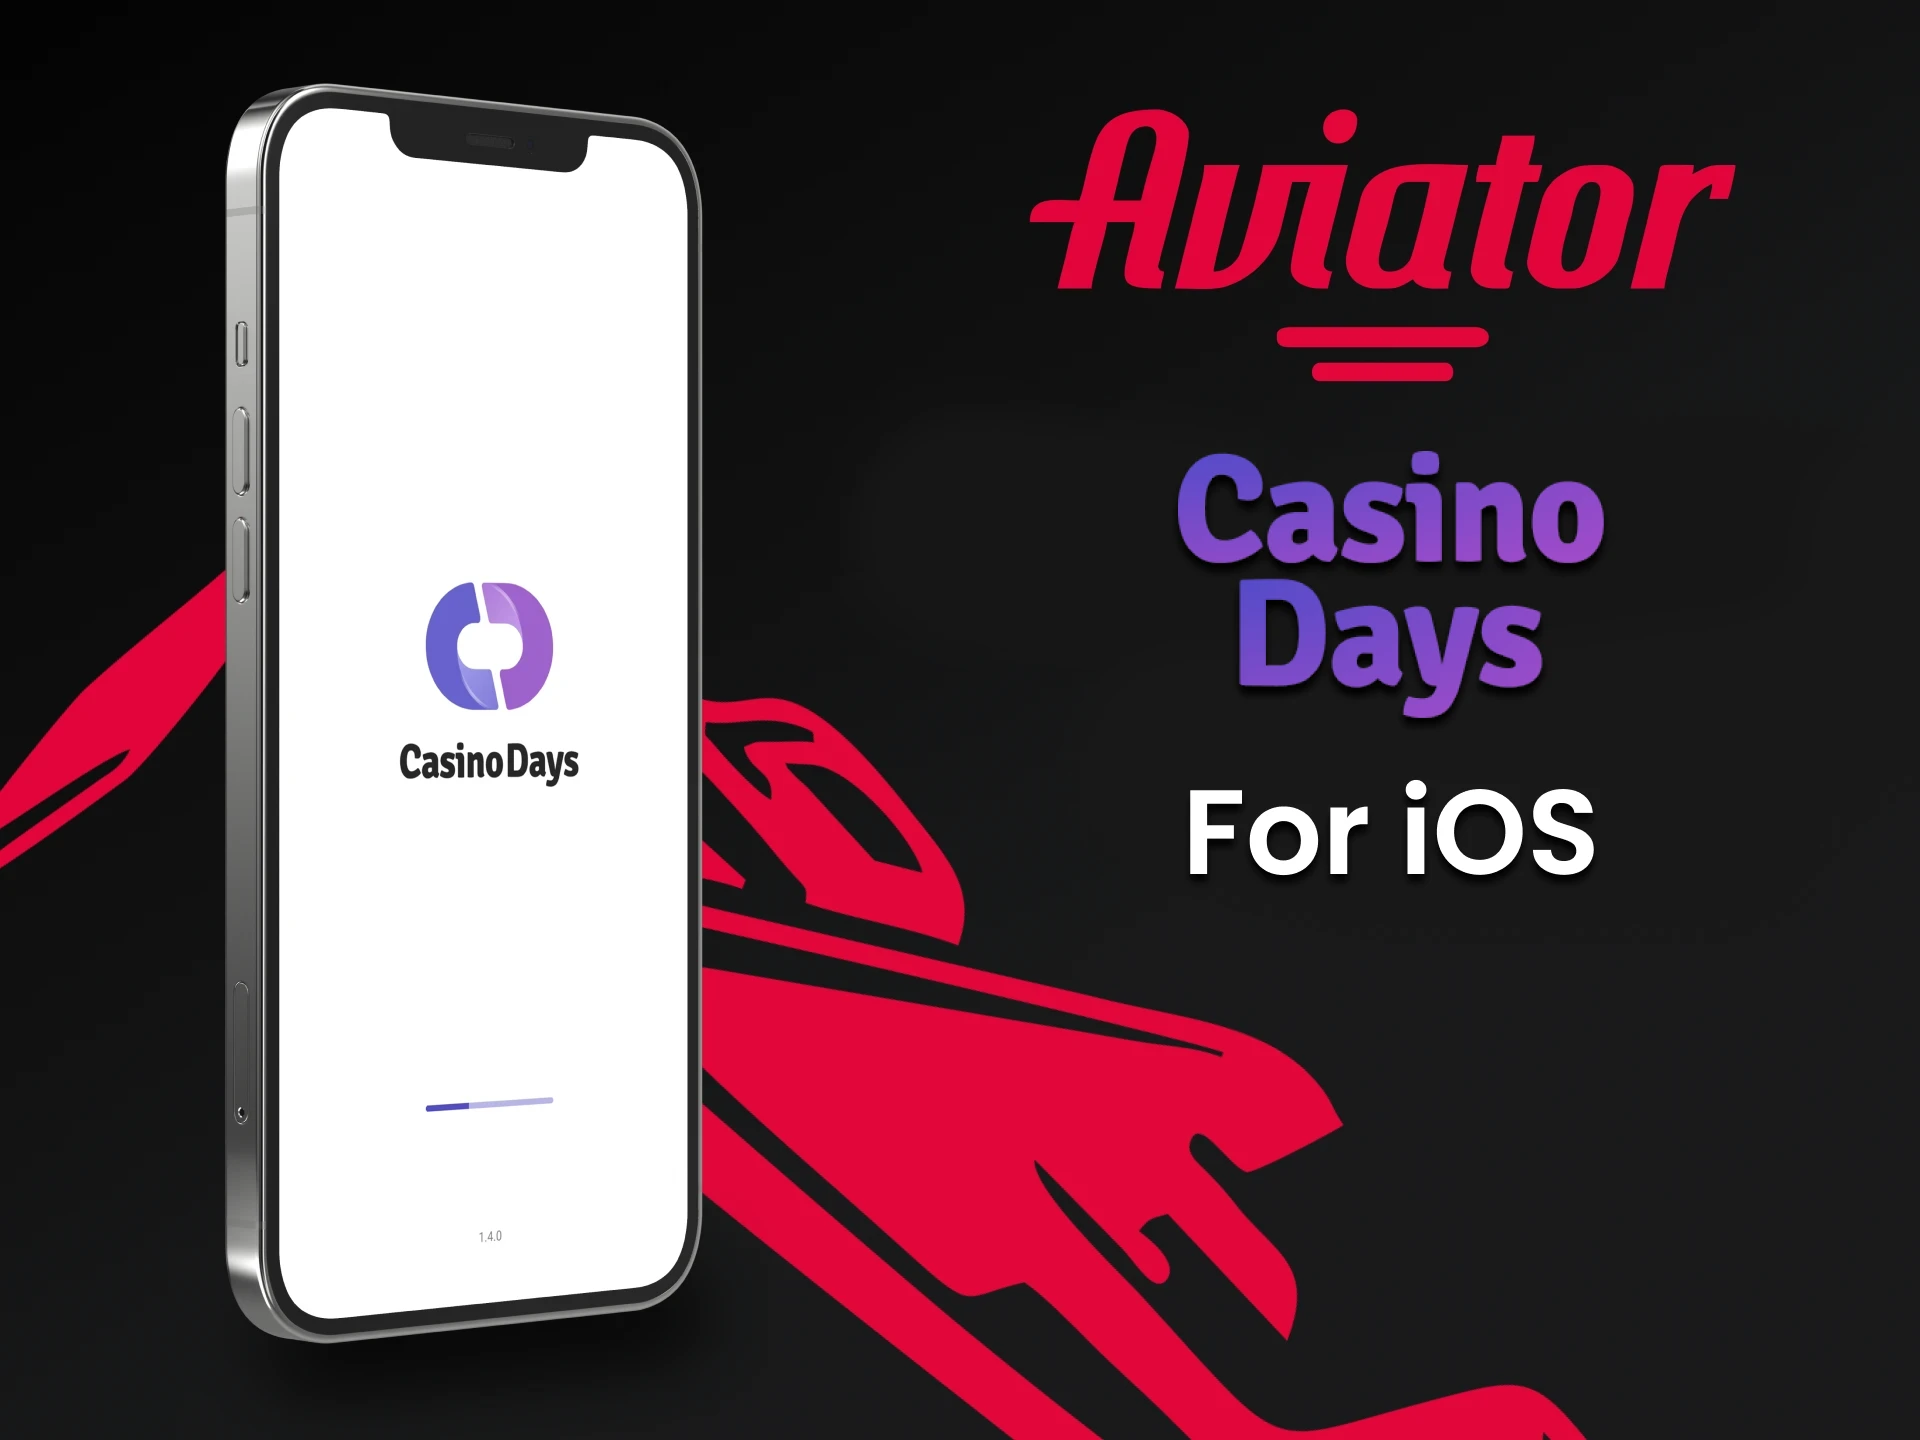 Play Aviator through the Casino Days app on iOS.